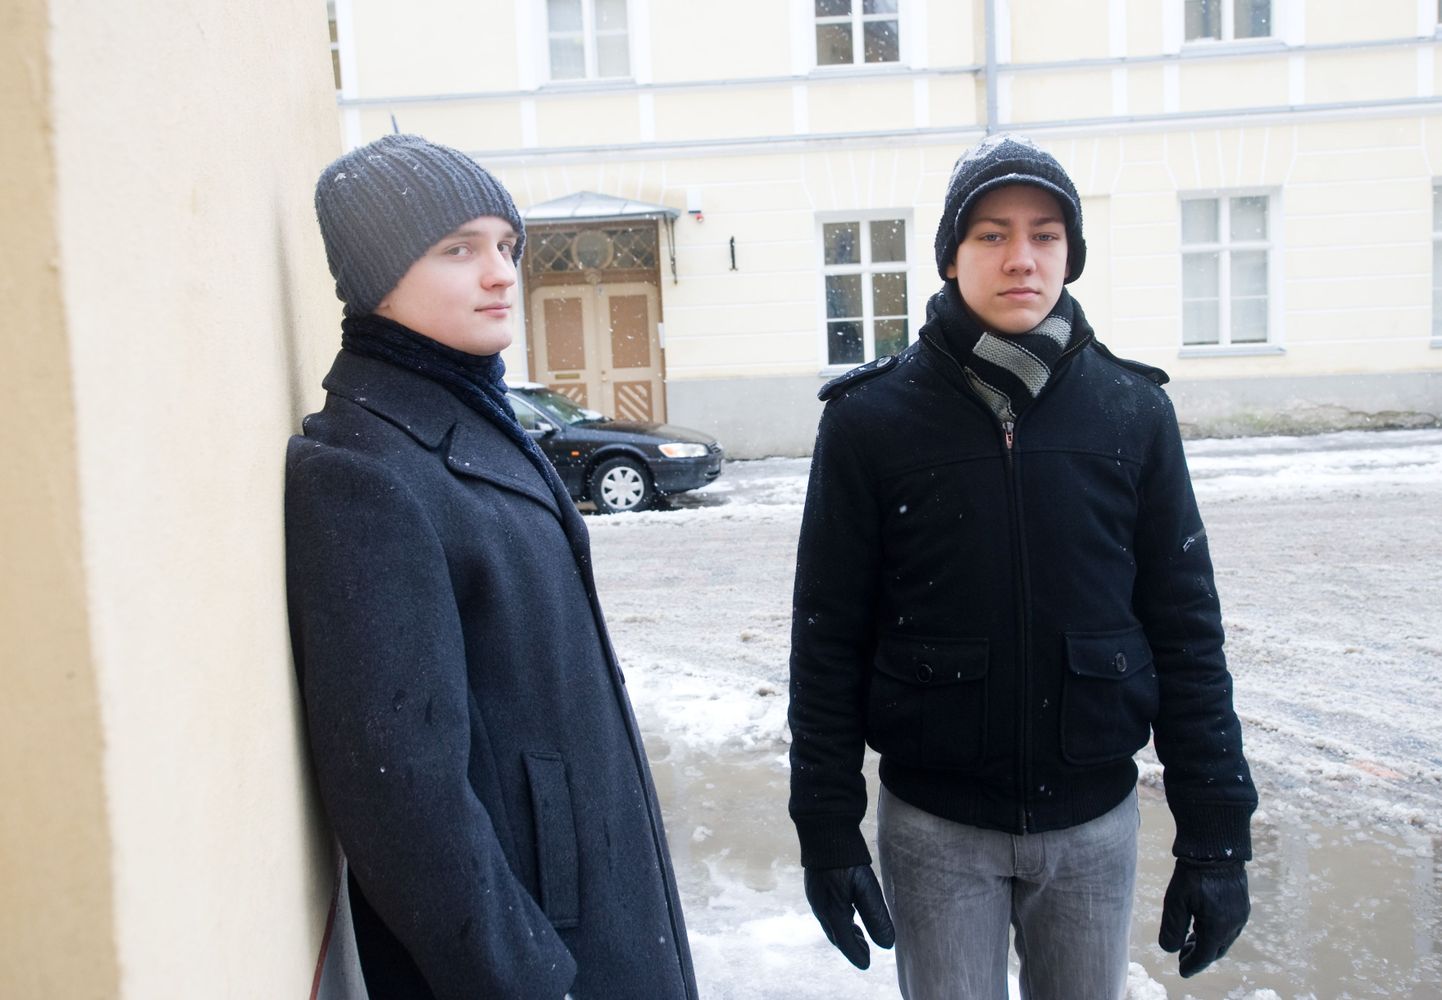 Vanalinna kolleegiumi gümnaasiumi õpilased Martin Koldits (vasakul) ja Oskar Murand (paremal) tegid uurimustöö töötavate gümnaasiumi õpilaste kohta.